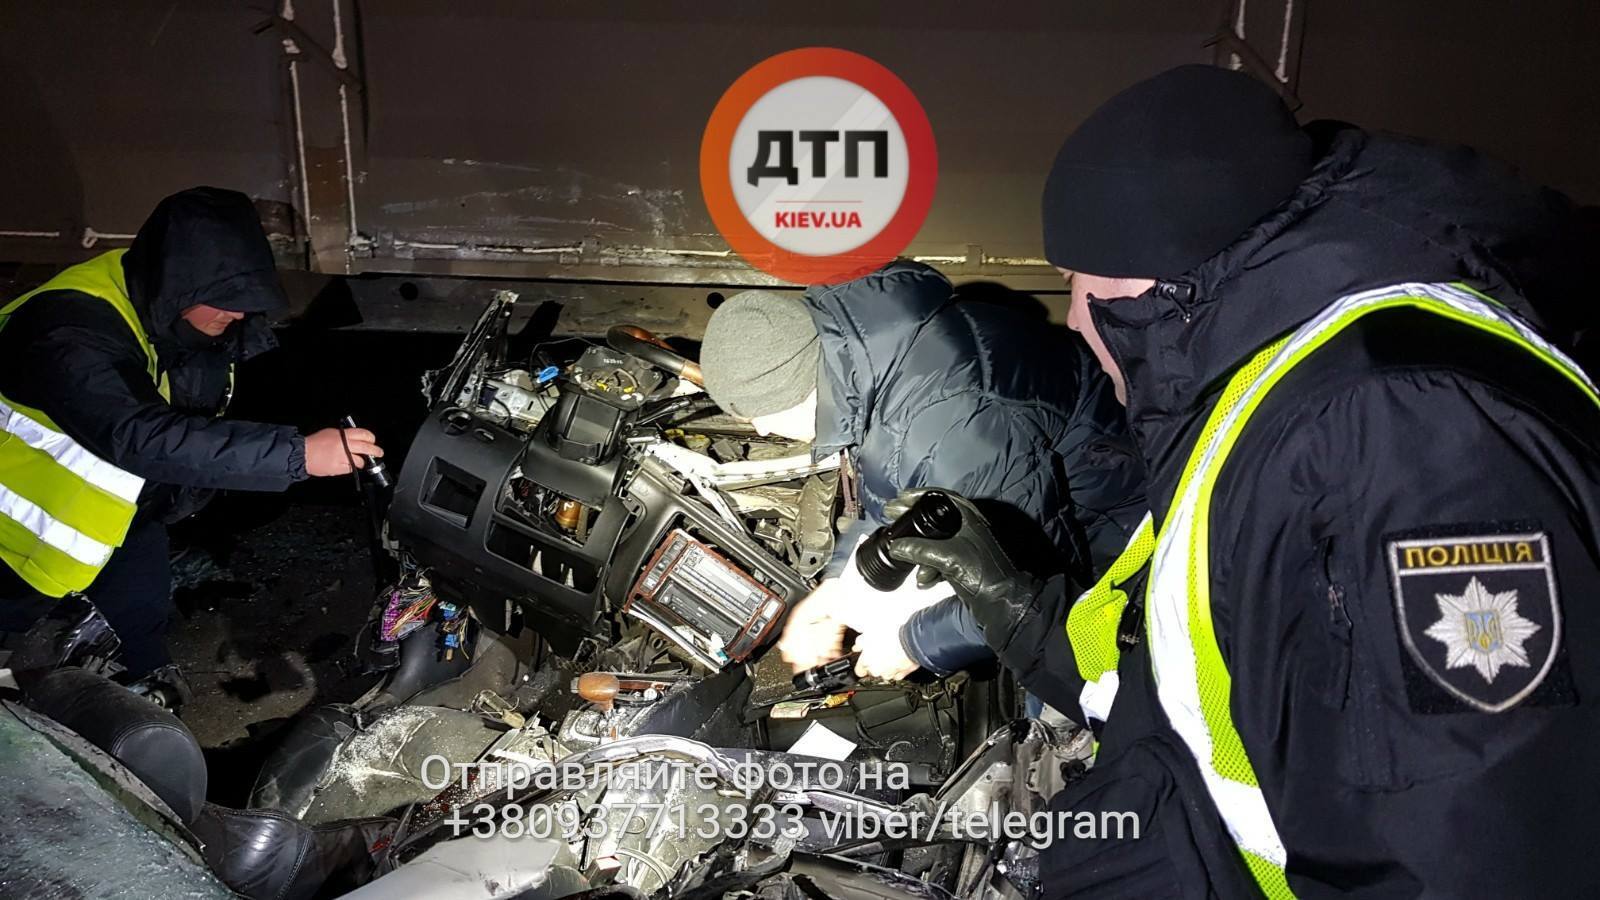 Семейную пару обезглавило в жутком ДТП под Киевом